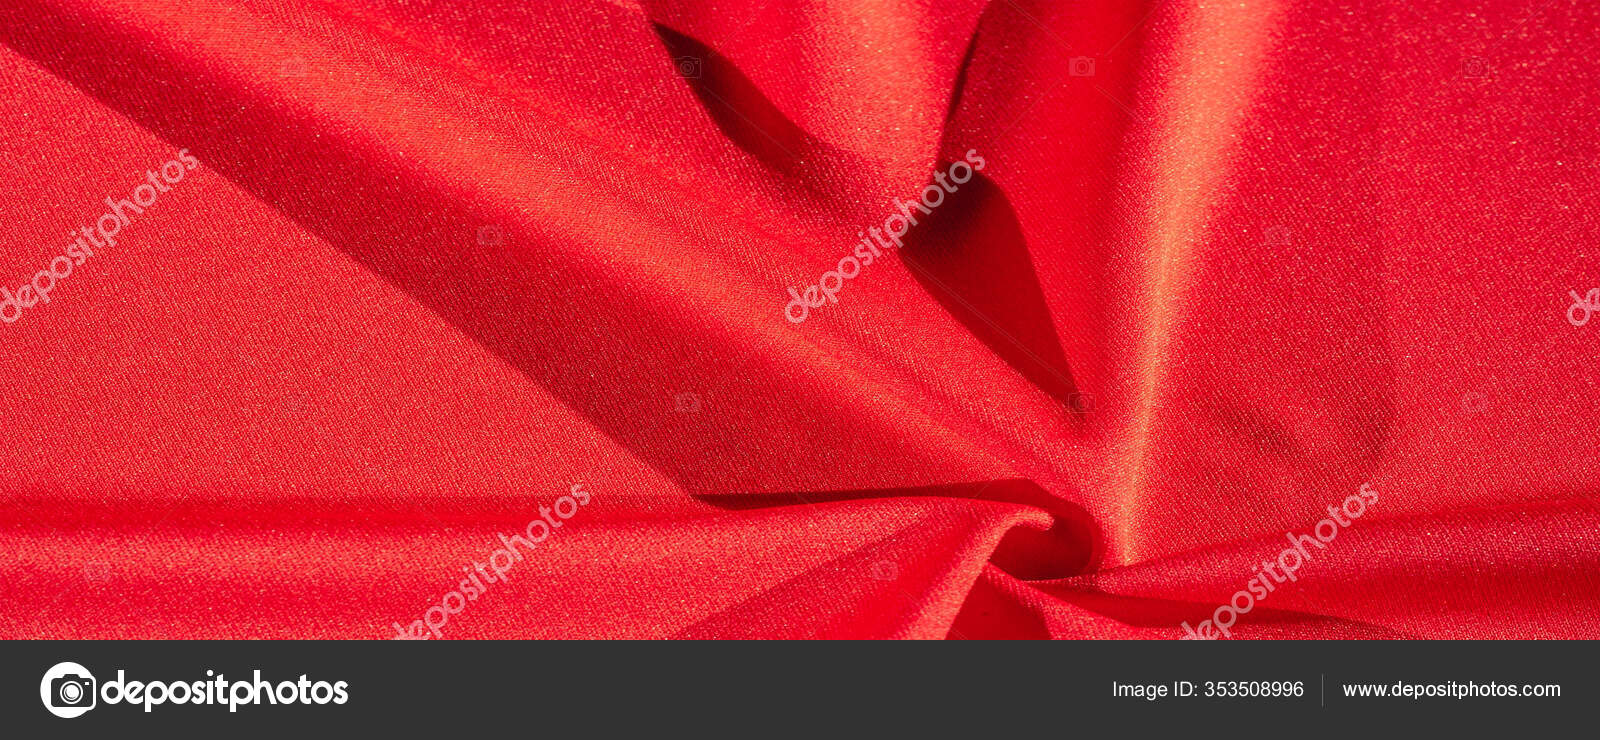 丝绸织物红色女性披肩方便为您的项目壁纸的卡 图库照片 C Ekina1 353508996